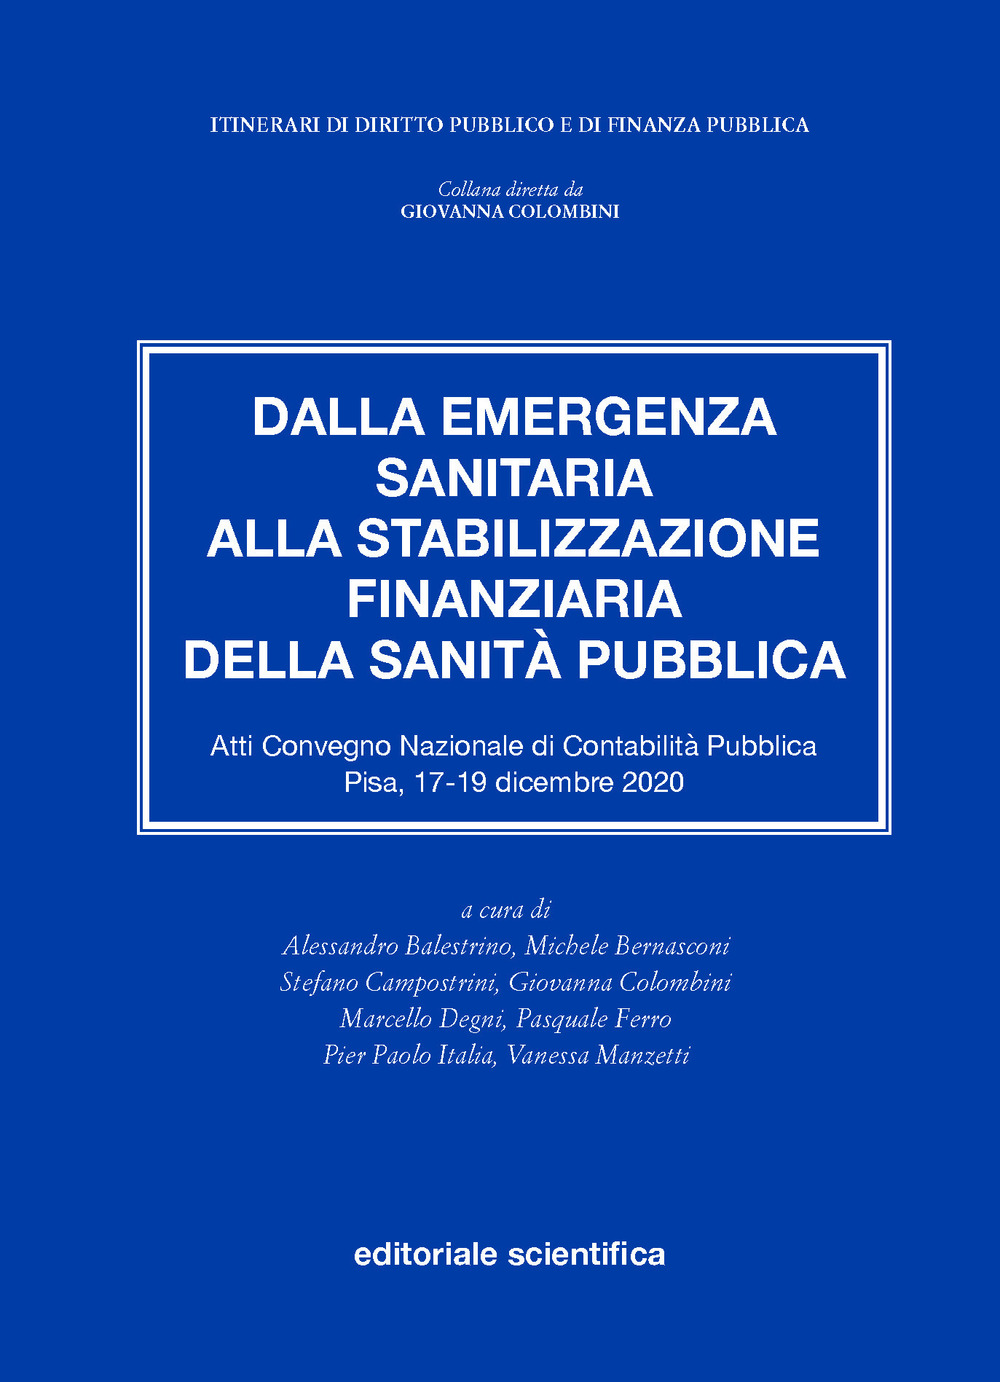 Dalla emergenza sanitaria alla stabilizzazione finanziaria della sanità pubblica. Atti del Convegno Nazionale di Contabilità Pubblica (Pisa, 17-19 dicembre 2020)